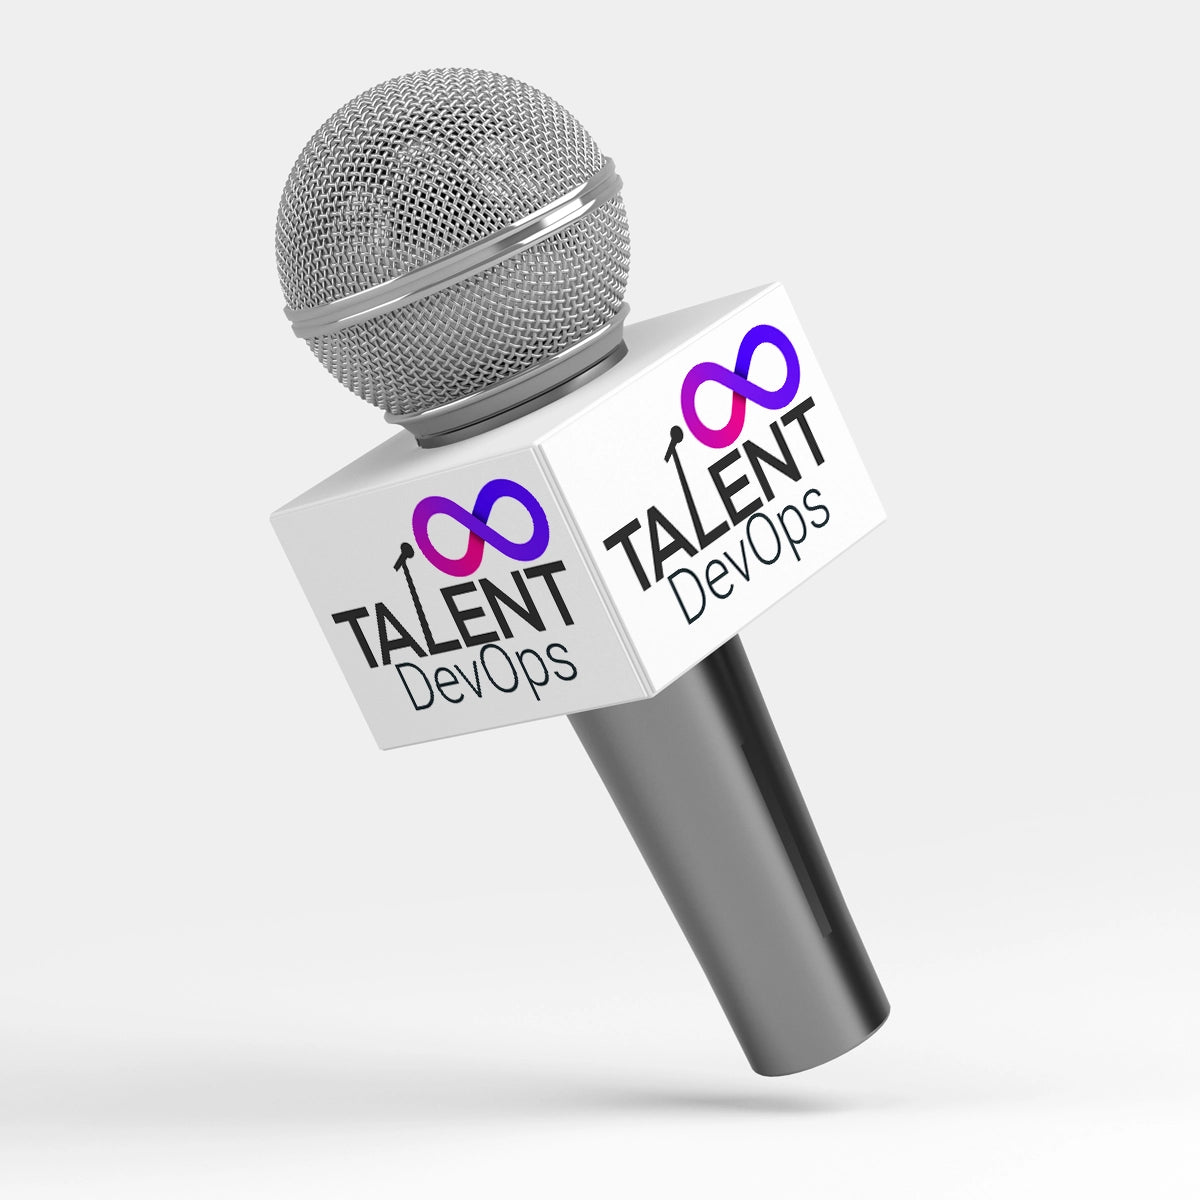 talentdevops.com